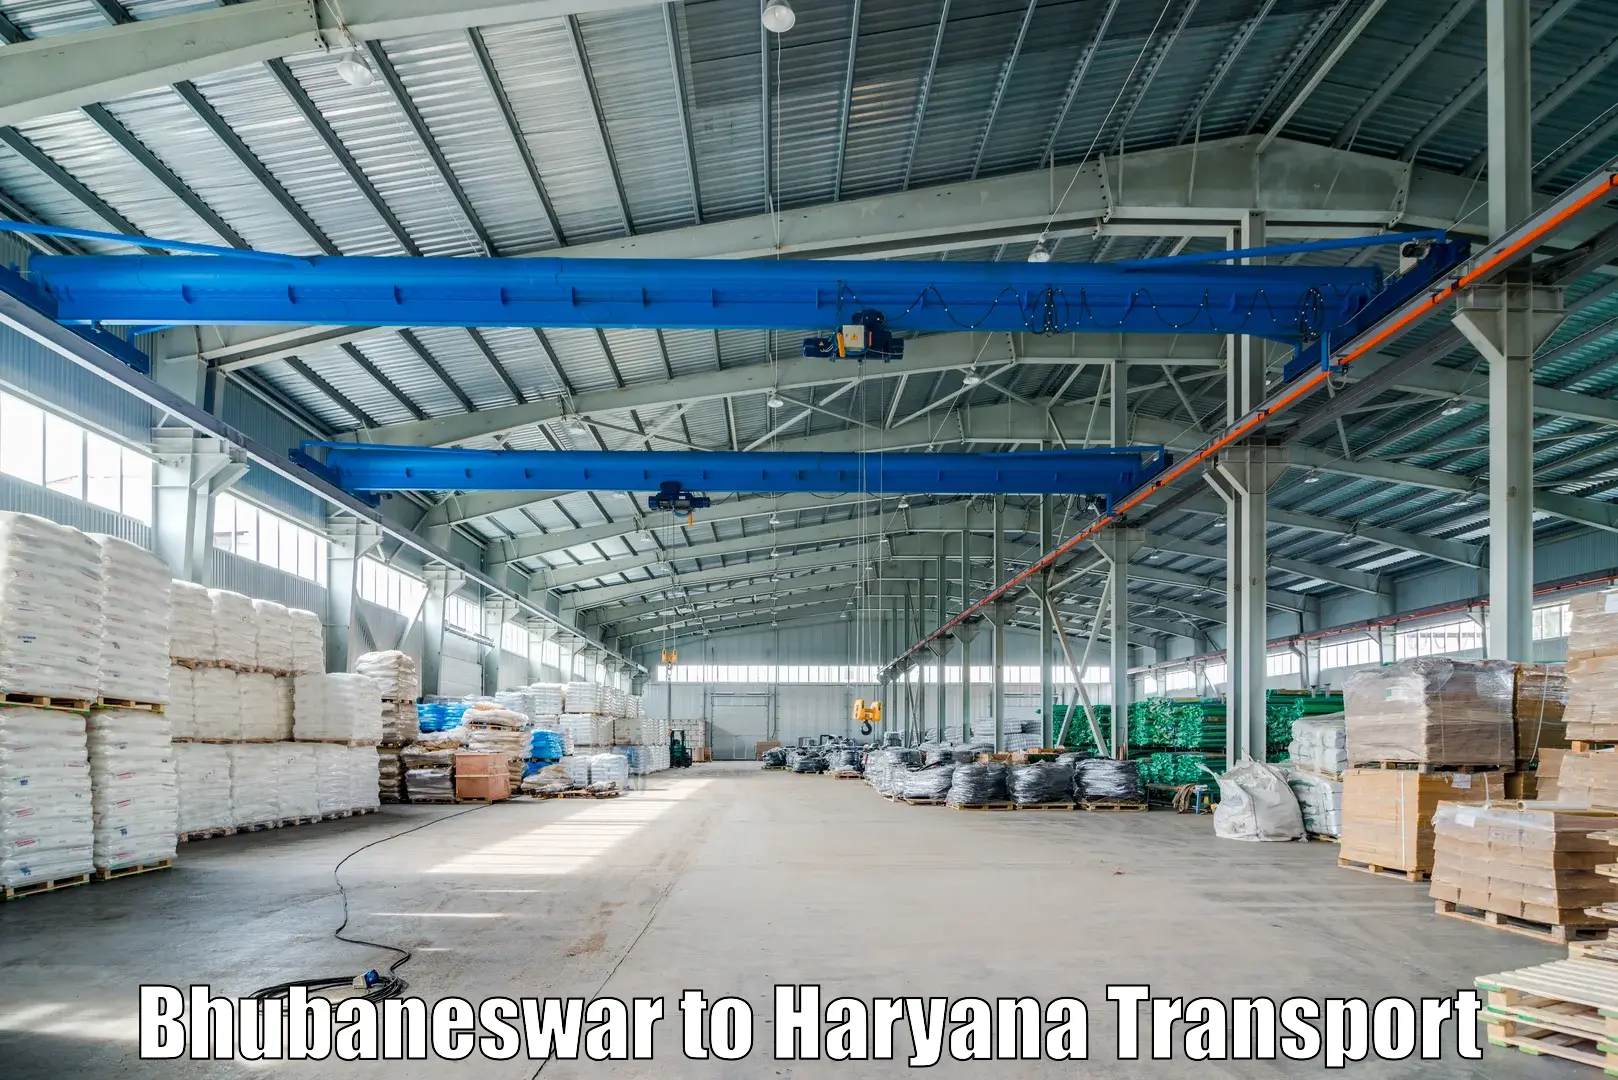 Furniture transport service Bhubaneswar to Bhiwani